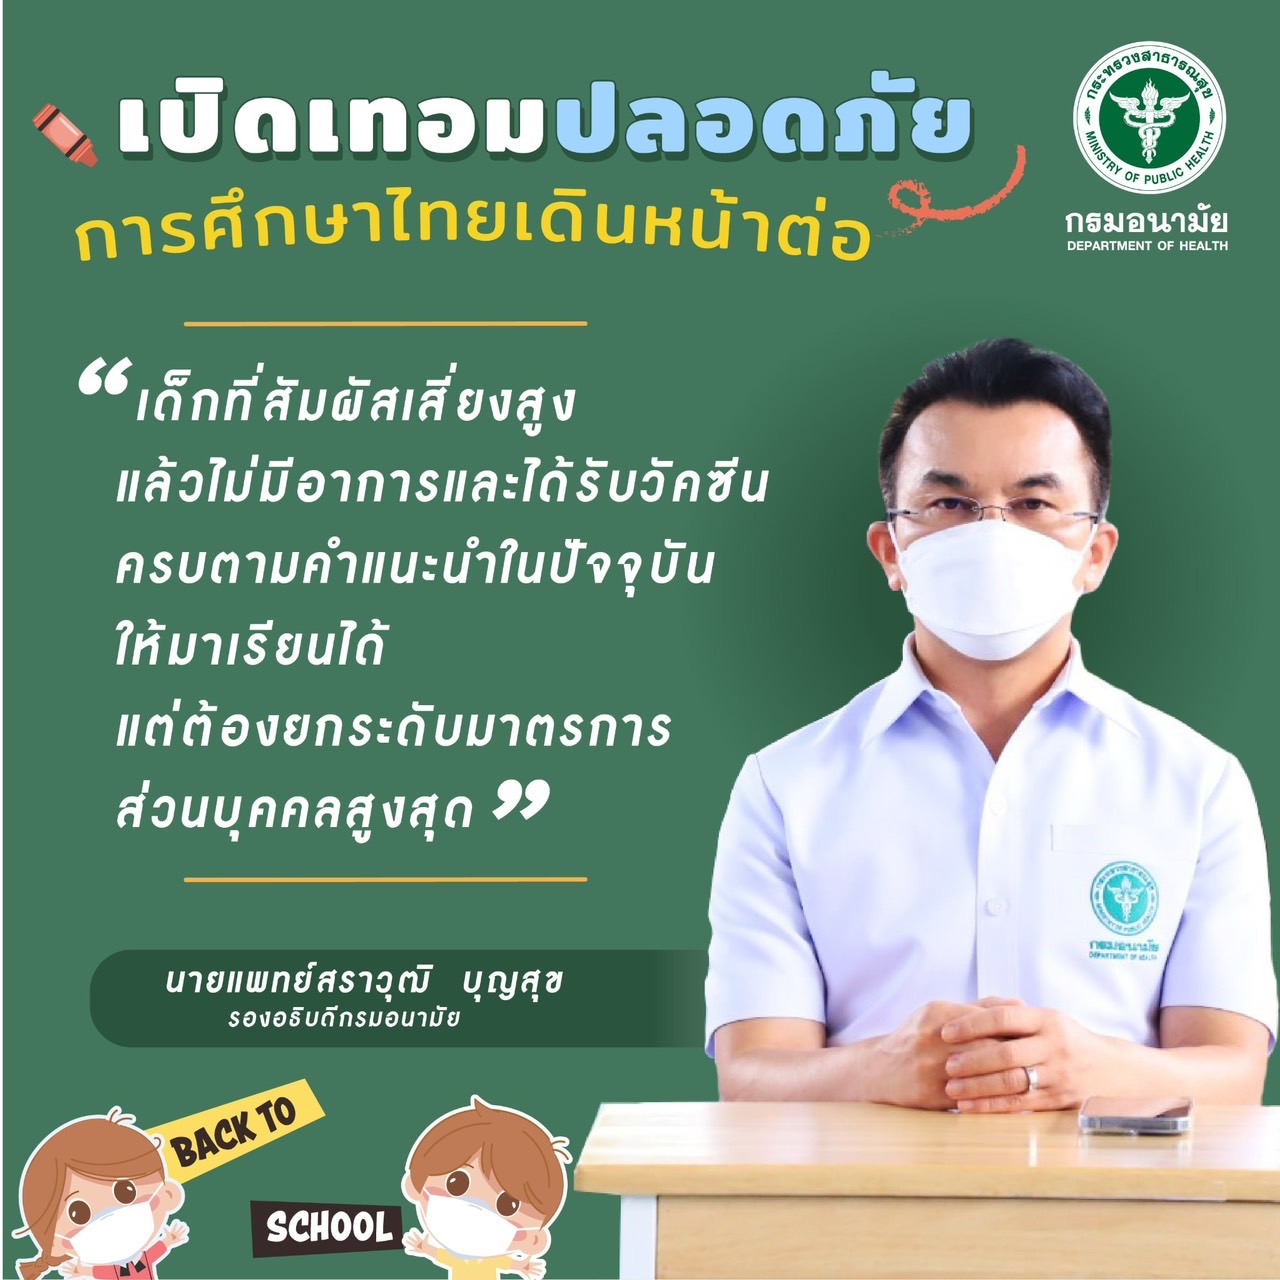 เปิดเทอมปลอดภัย การศึกษาไทยเดินหน้าต่อ